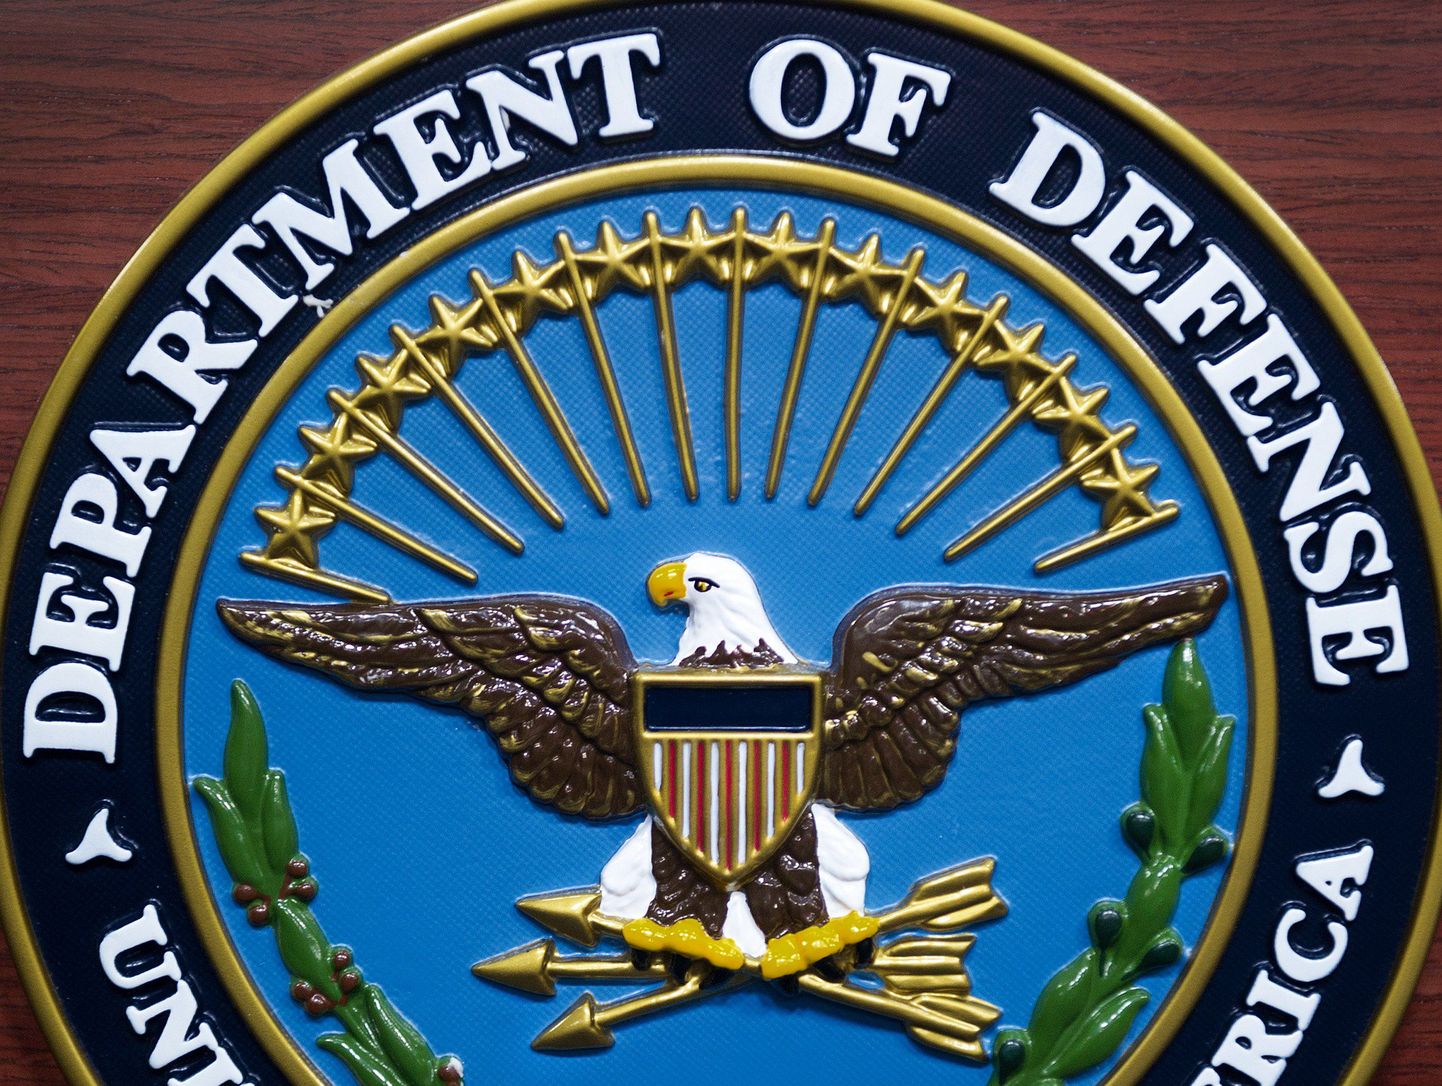 Pentagoni logo.